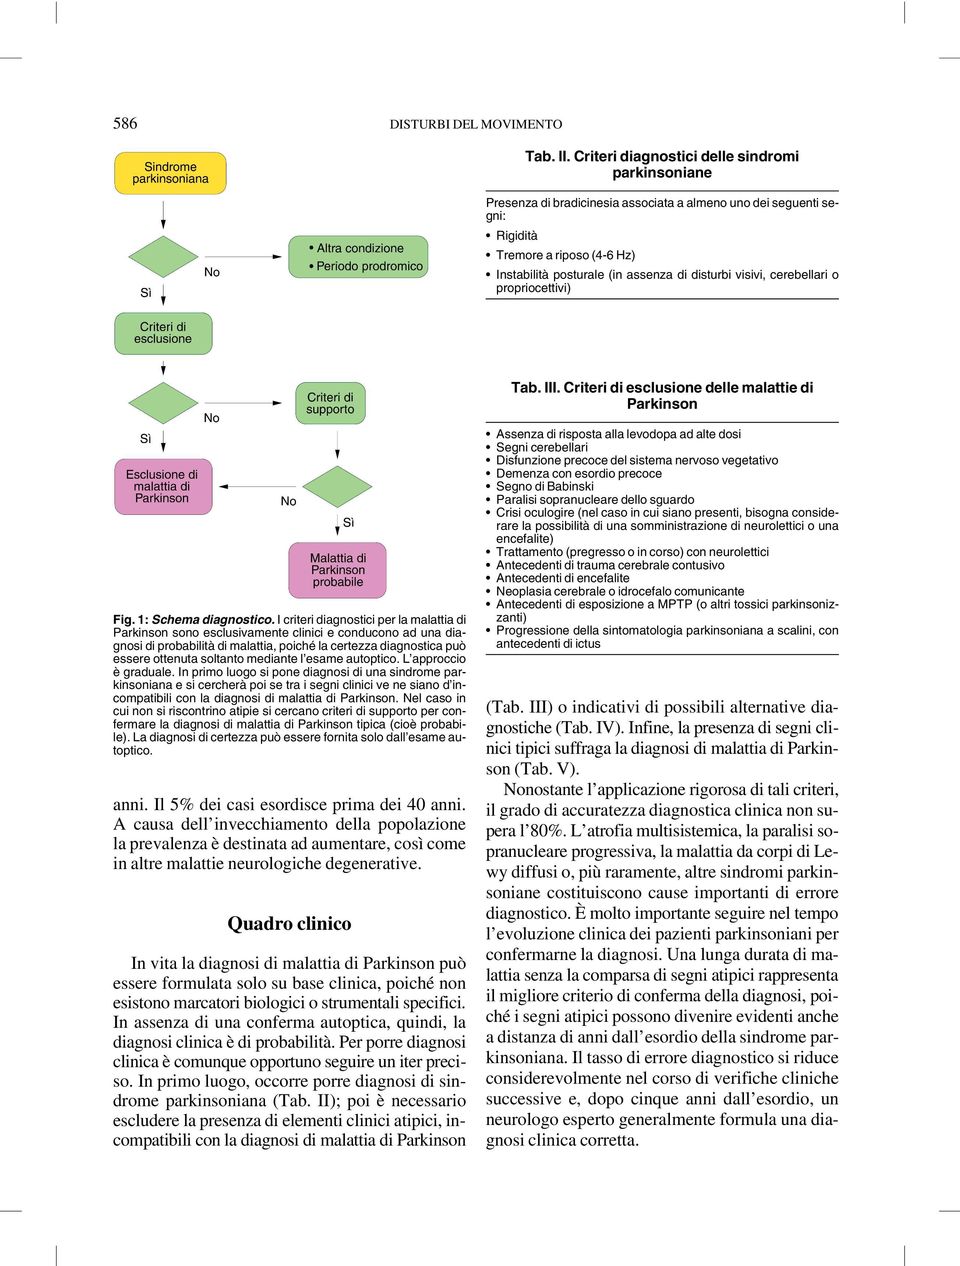 visivi, cerebellari o propriocettivi) Tab. III. Criteri di esclusione delle malattie di Parkinson Fig. 1: Schema diagnostico.